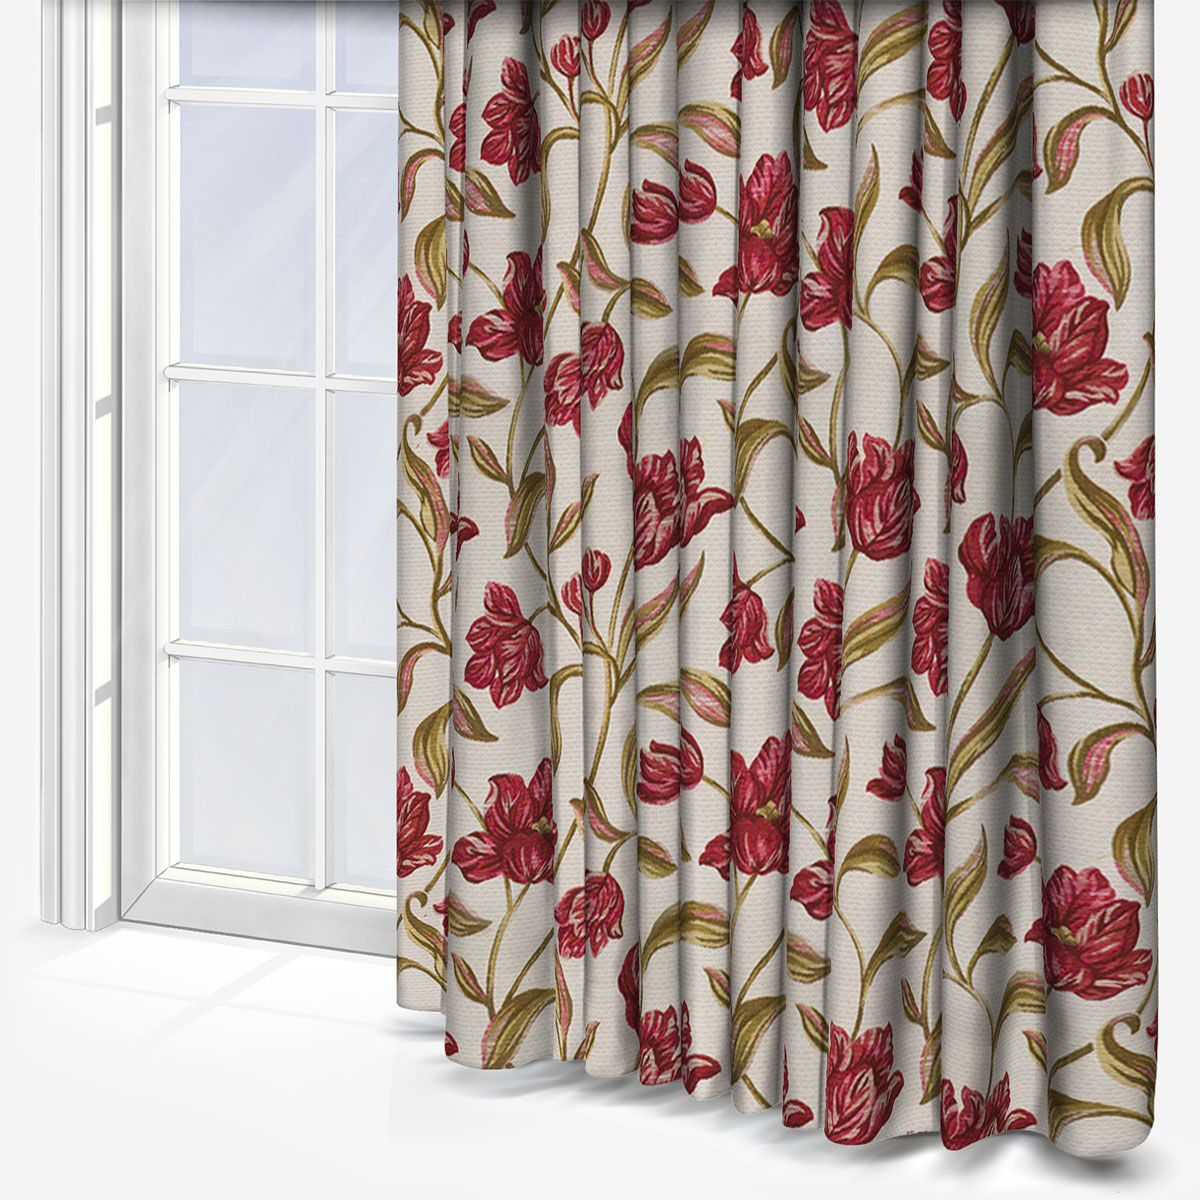 Gabriella Rouge Curtain Custom Curtains, Gabriella Shower Curtain